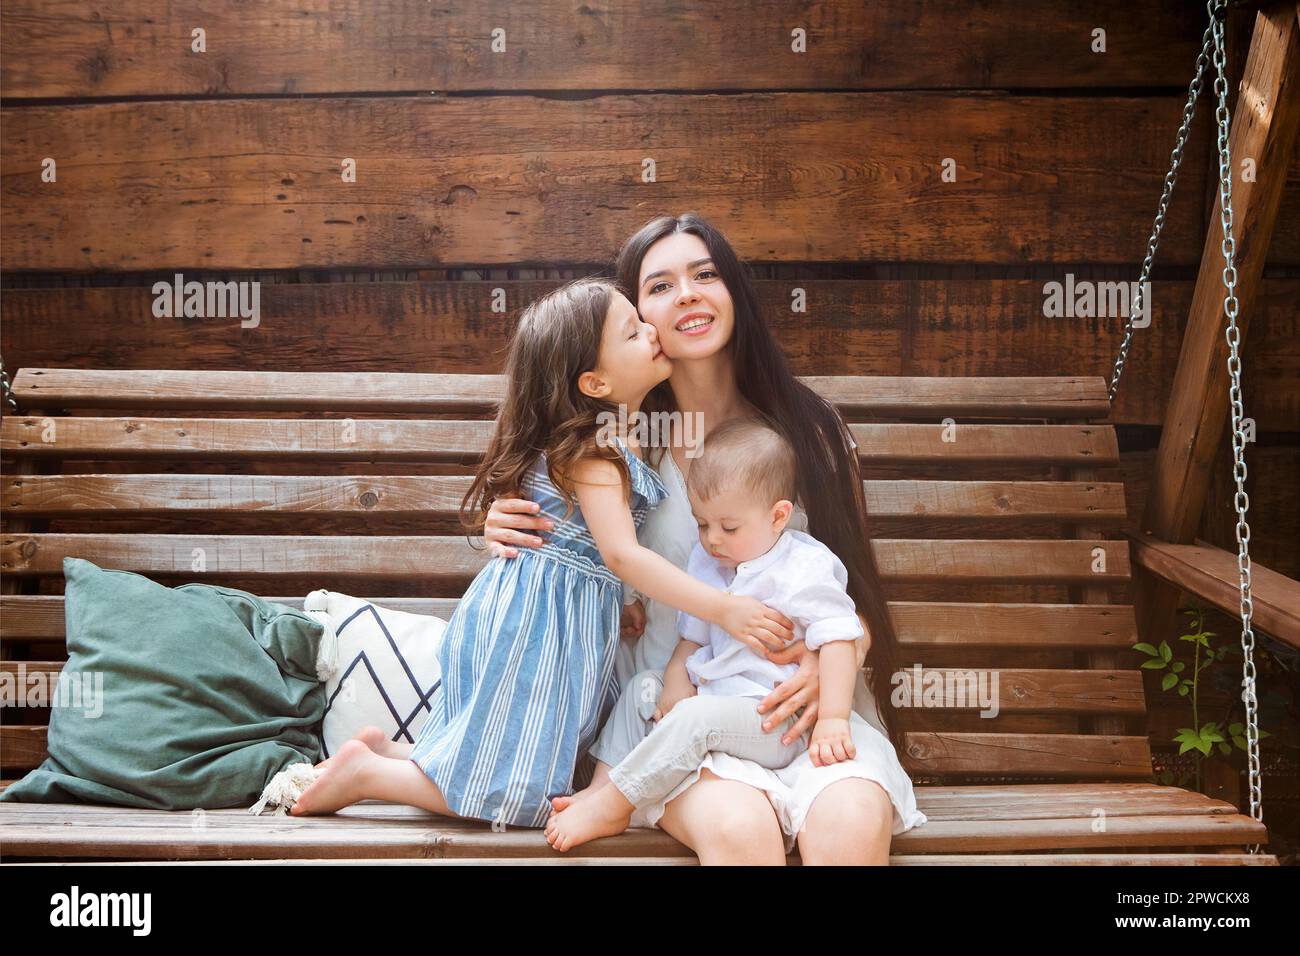 Junge, entzückte Mutter sitzt im Sessel mit entzückenden kleinen Geschwistern auf der Terrasse des Landhauses und entspannt sich am Wochenende zusammen Stockfoto